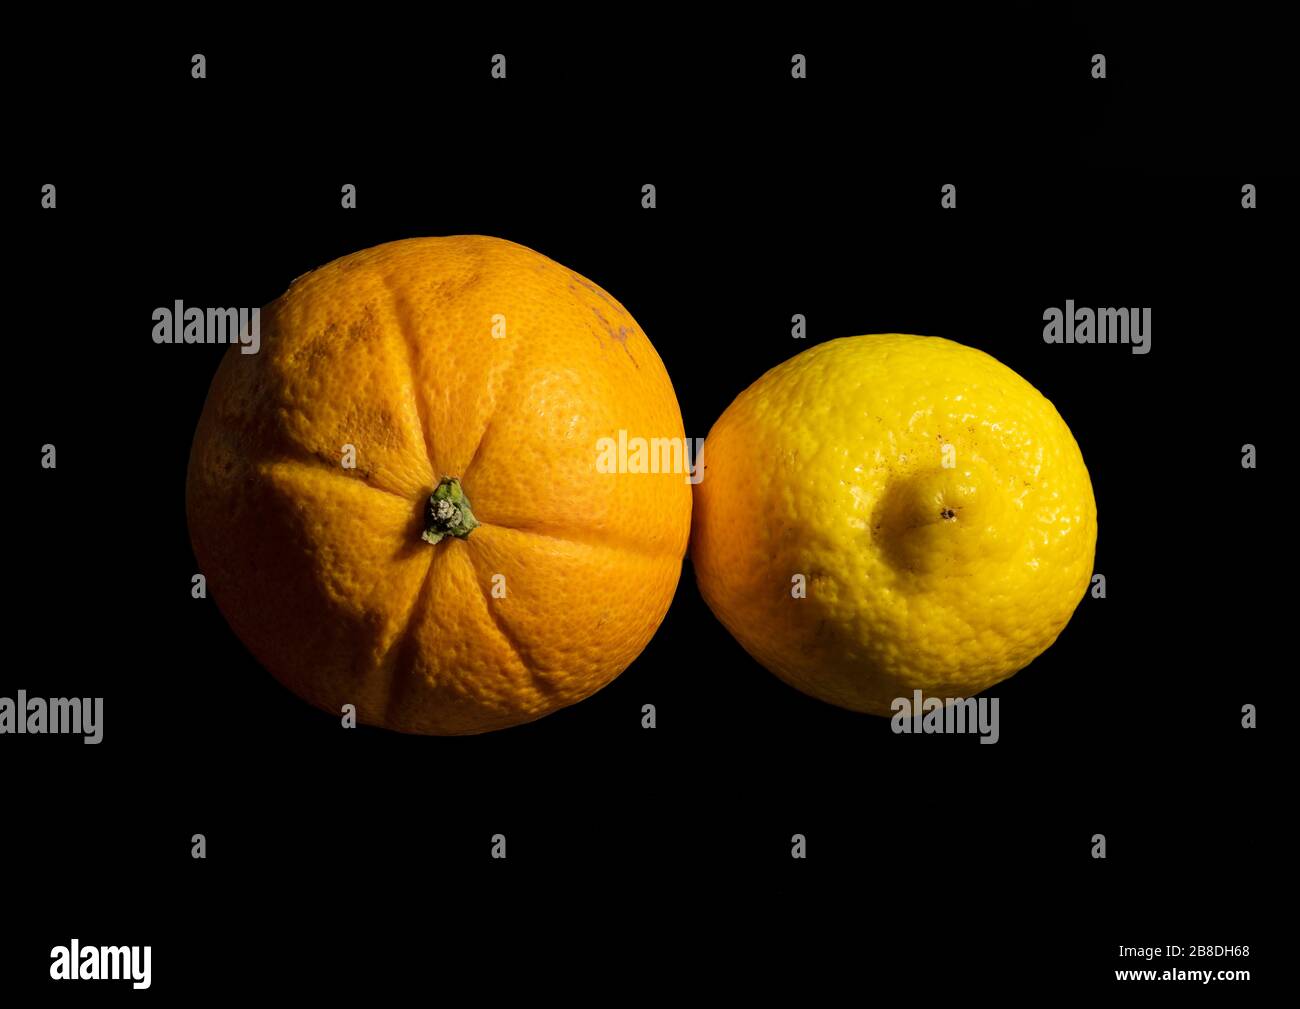 Gros plan d'une image d'orange et de citron à l'aide d'une technique de superposition de mise au point qui rend les sujets en nette mise au point de l'avant vers l'arrière Banque D'Images